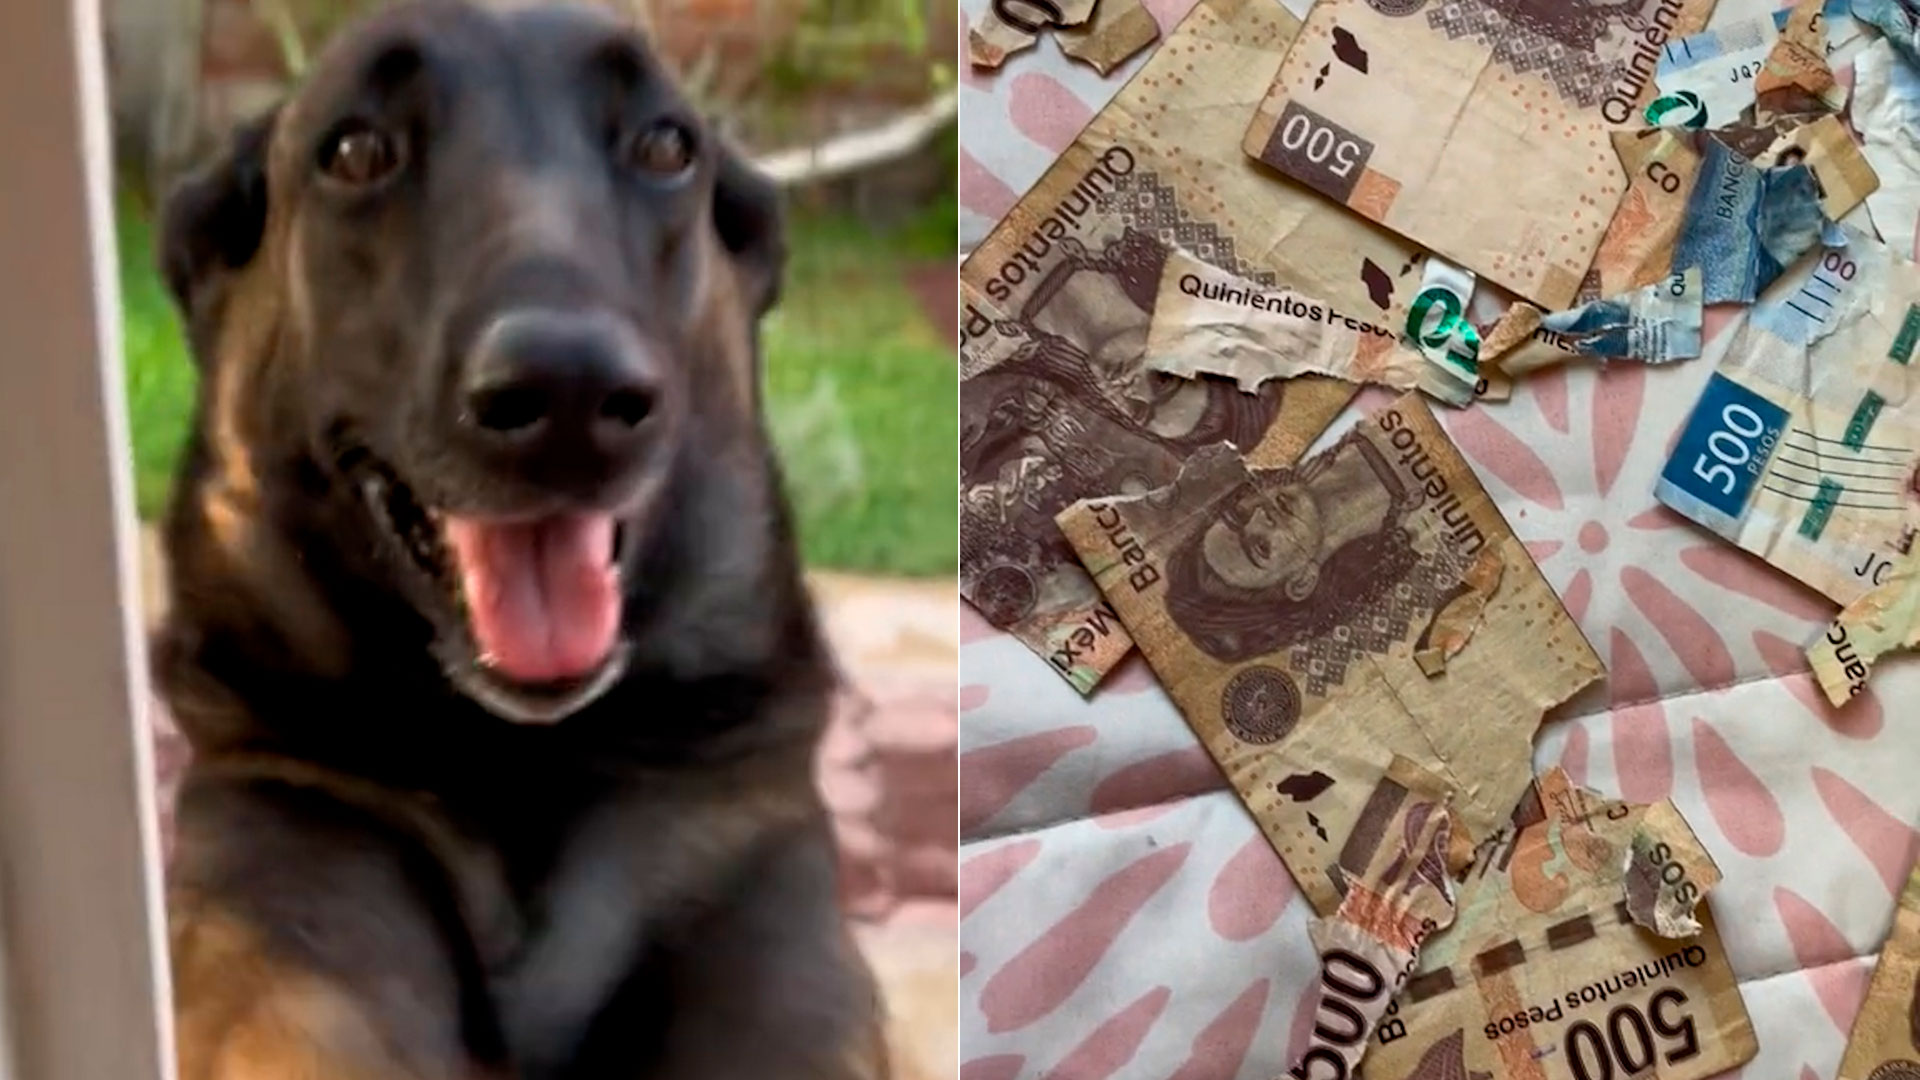 Perrito destroza a mordidas billetes de 500 pesos y usuarios lo defienden: “Fuimos nosotros, no le hagan nada”